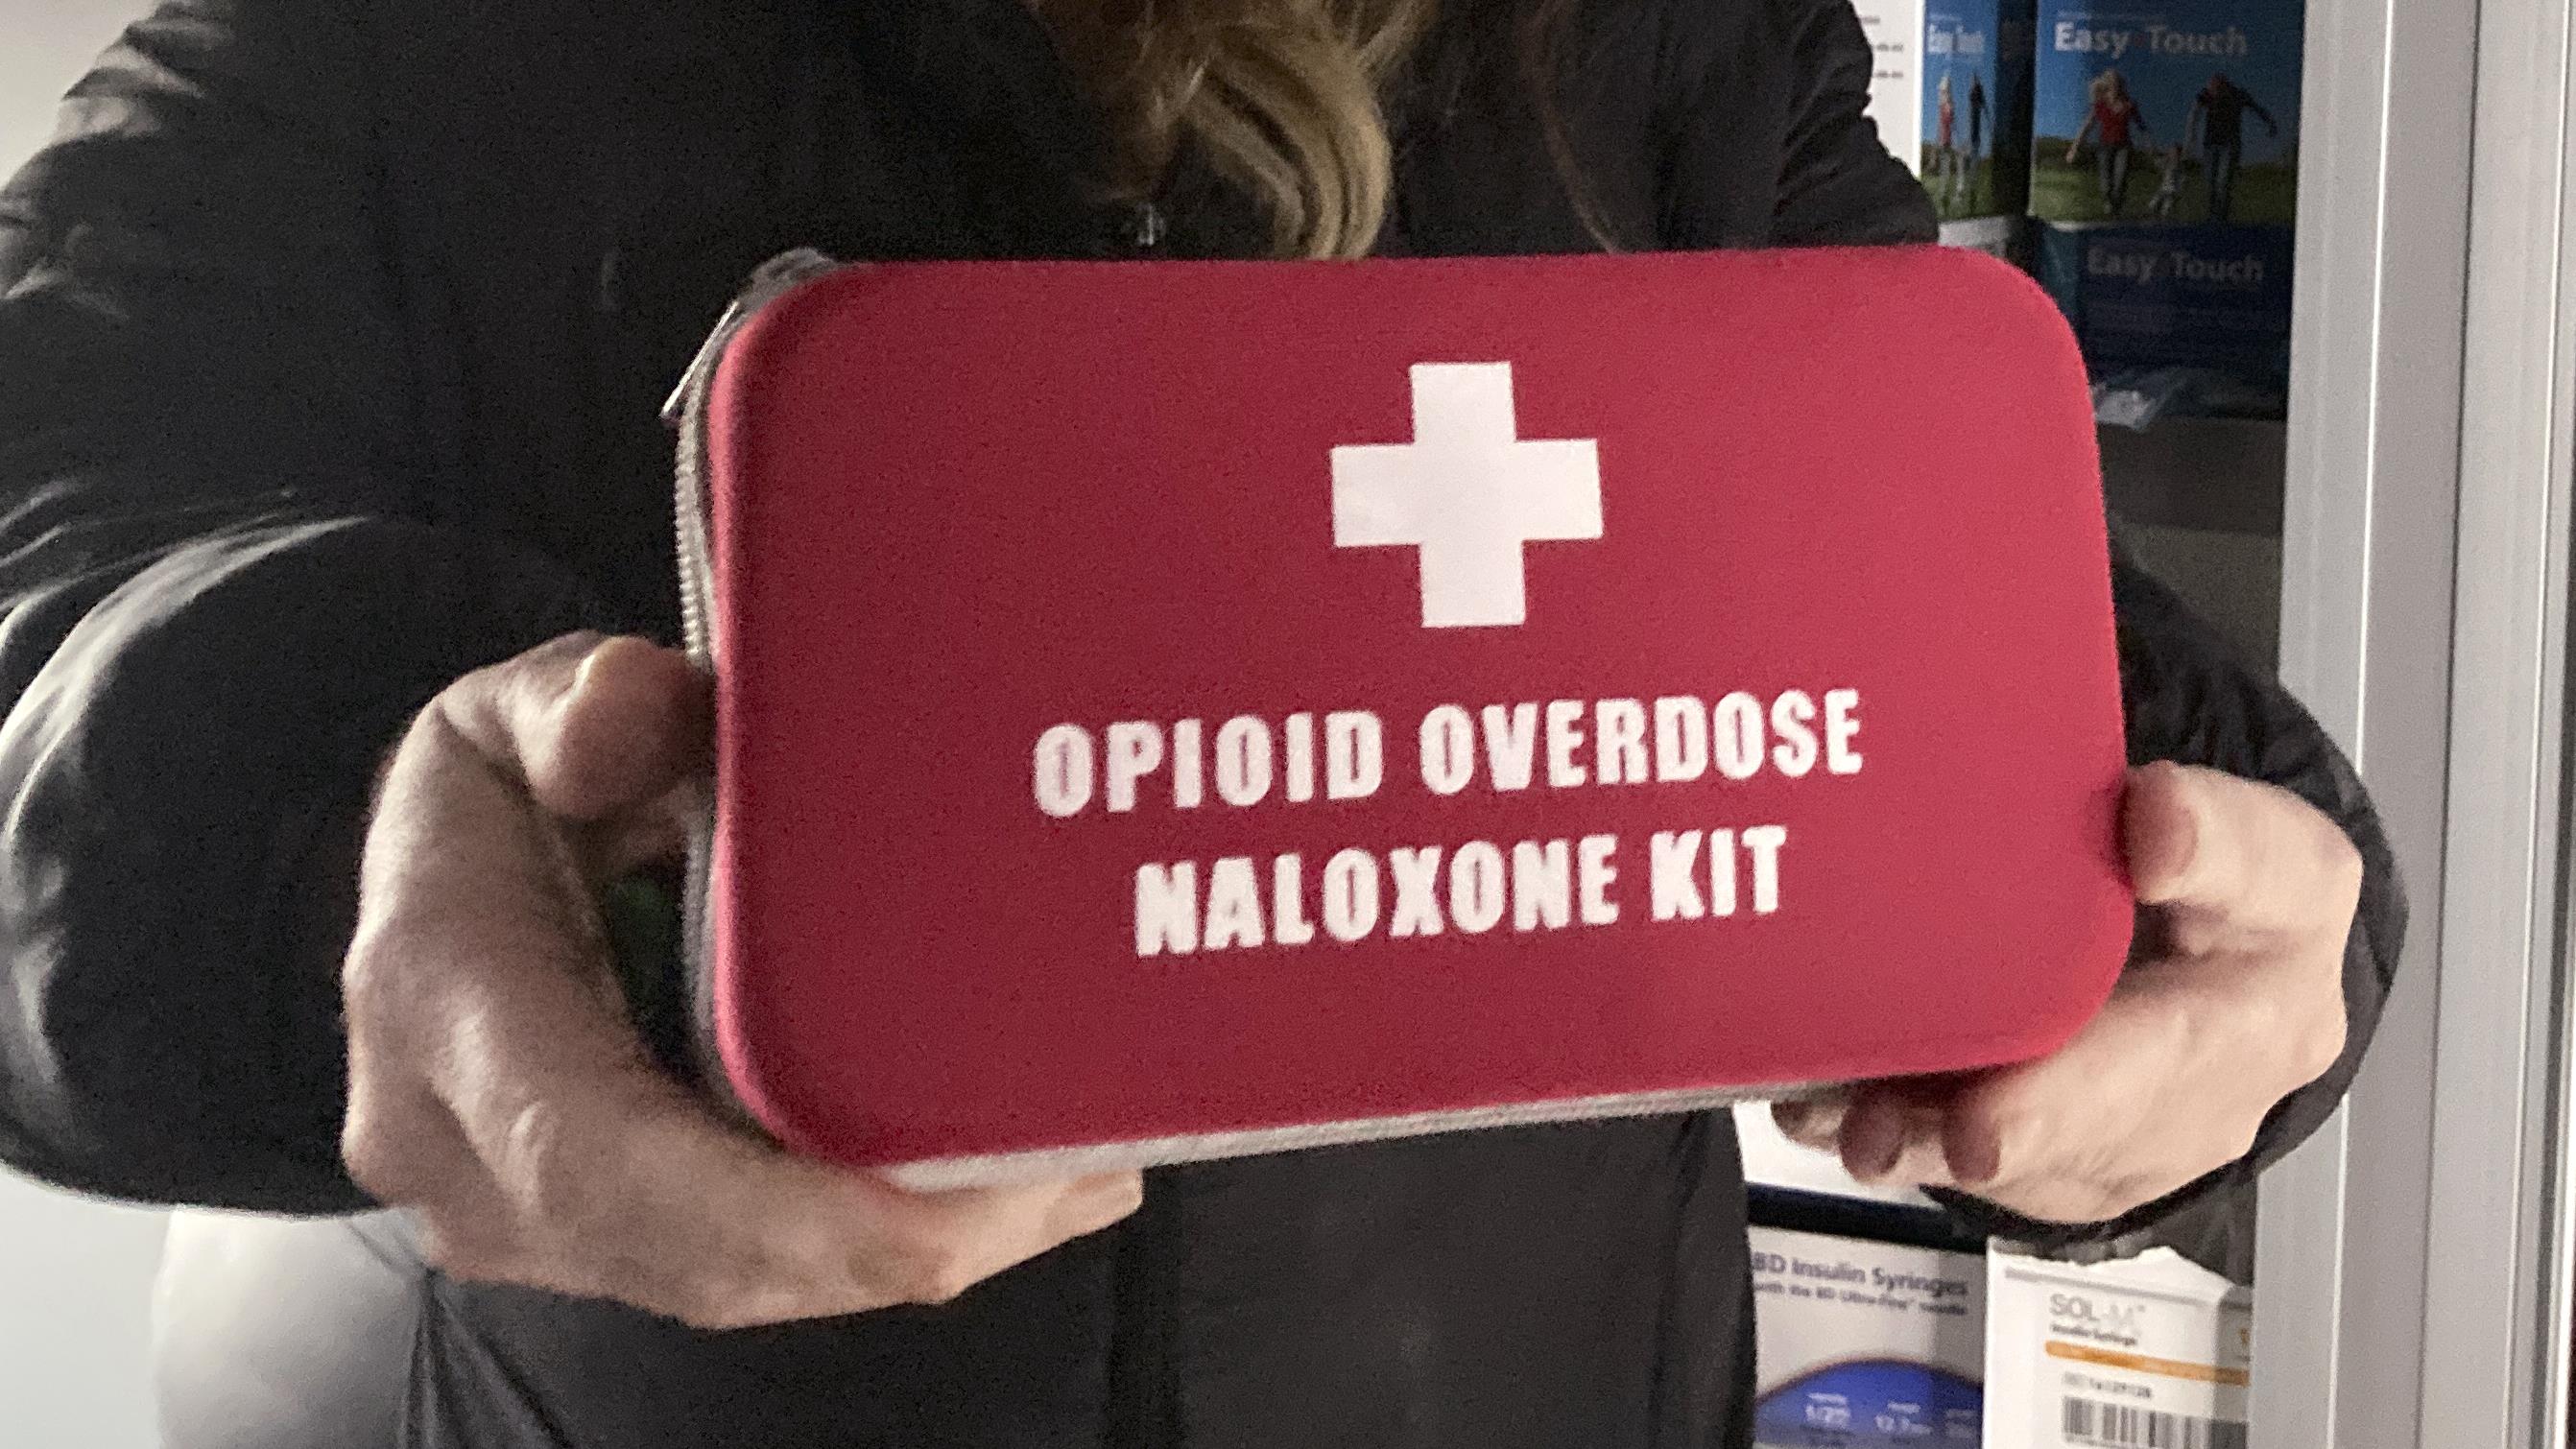 Crise des opioïdes : sept ans d'état d’urgence
Crise des opioïdes : sept ans d'état d’urgence